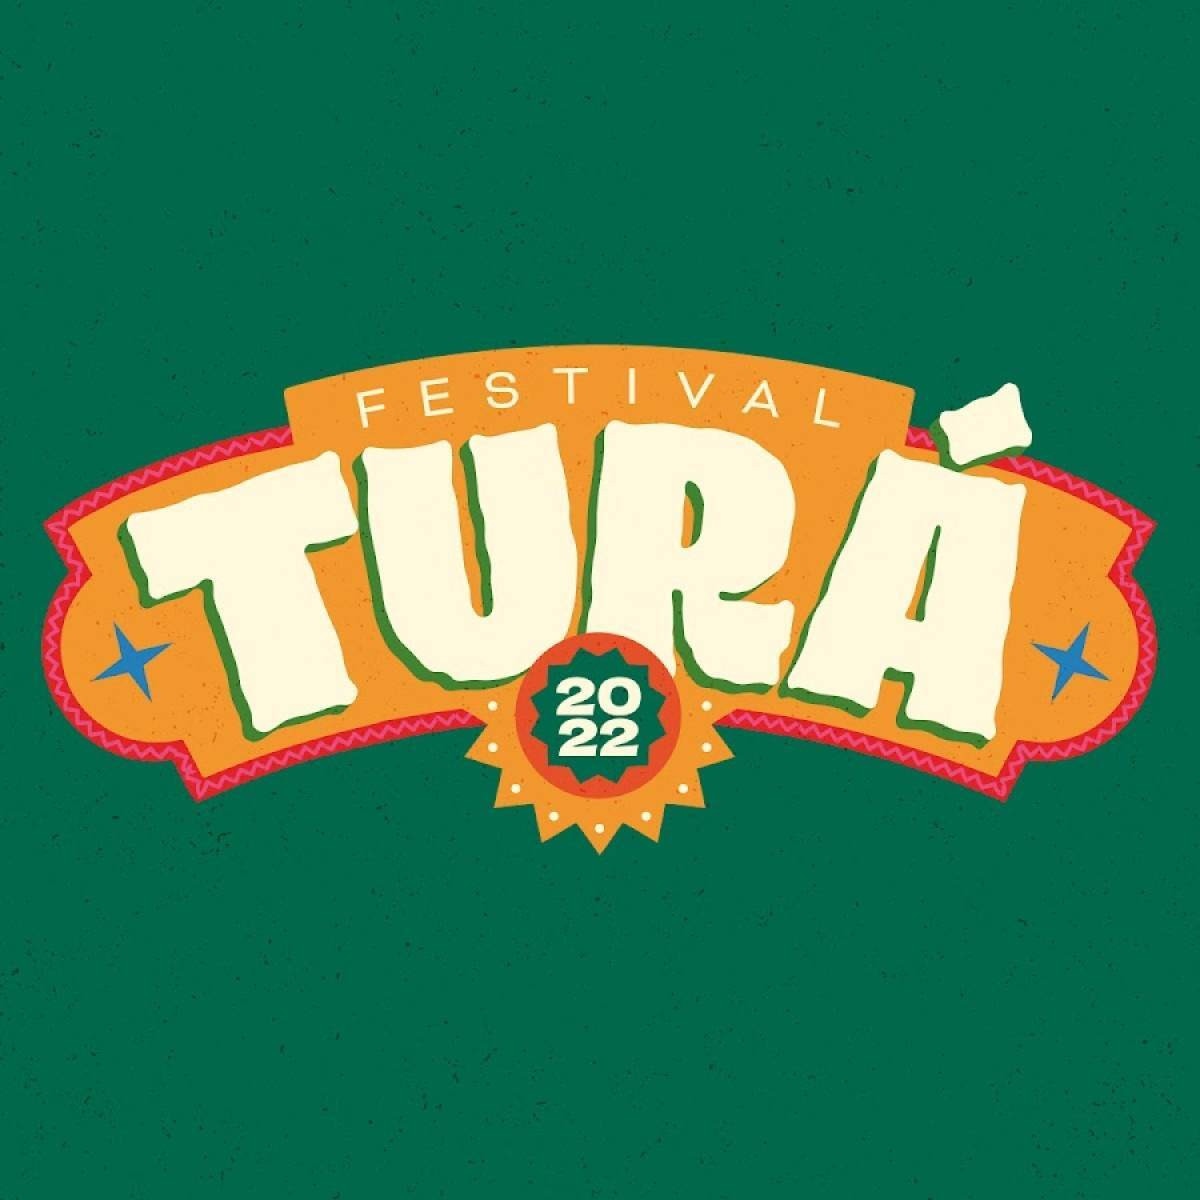 Festival Turá confirma datas da edição em junho, no Parque do Ibirapuera